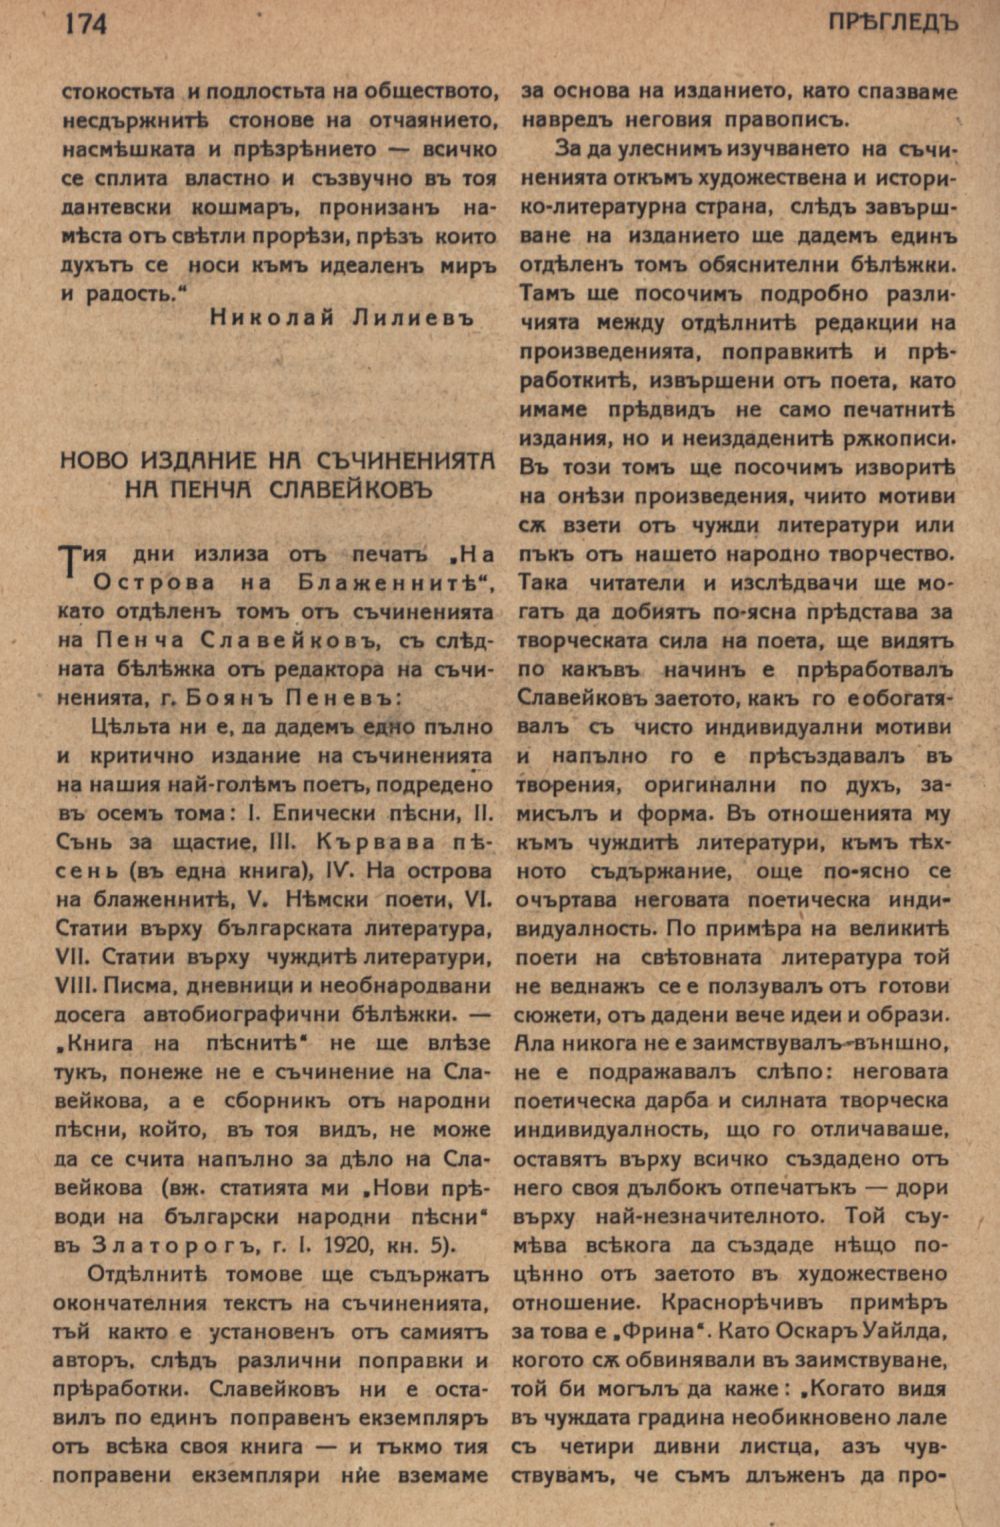 Ново издание на съчиненията на Пенча Славейков